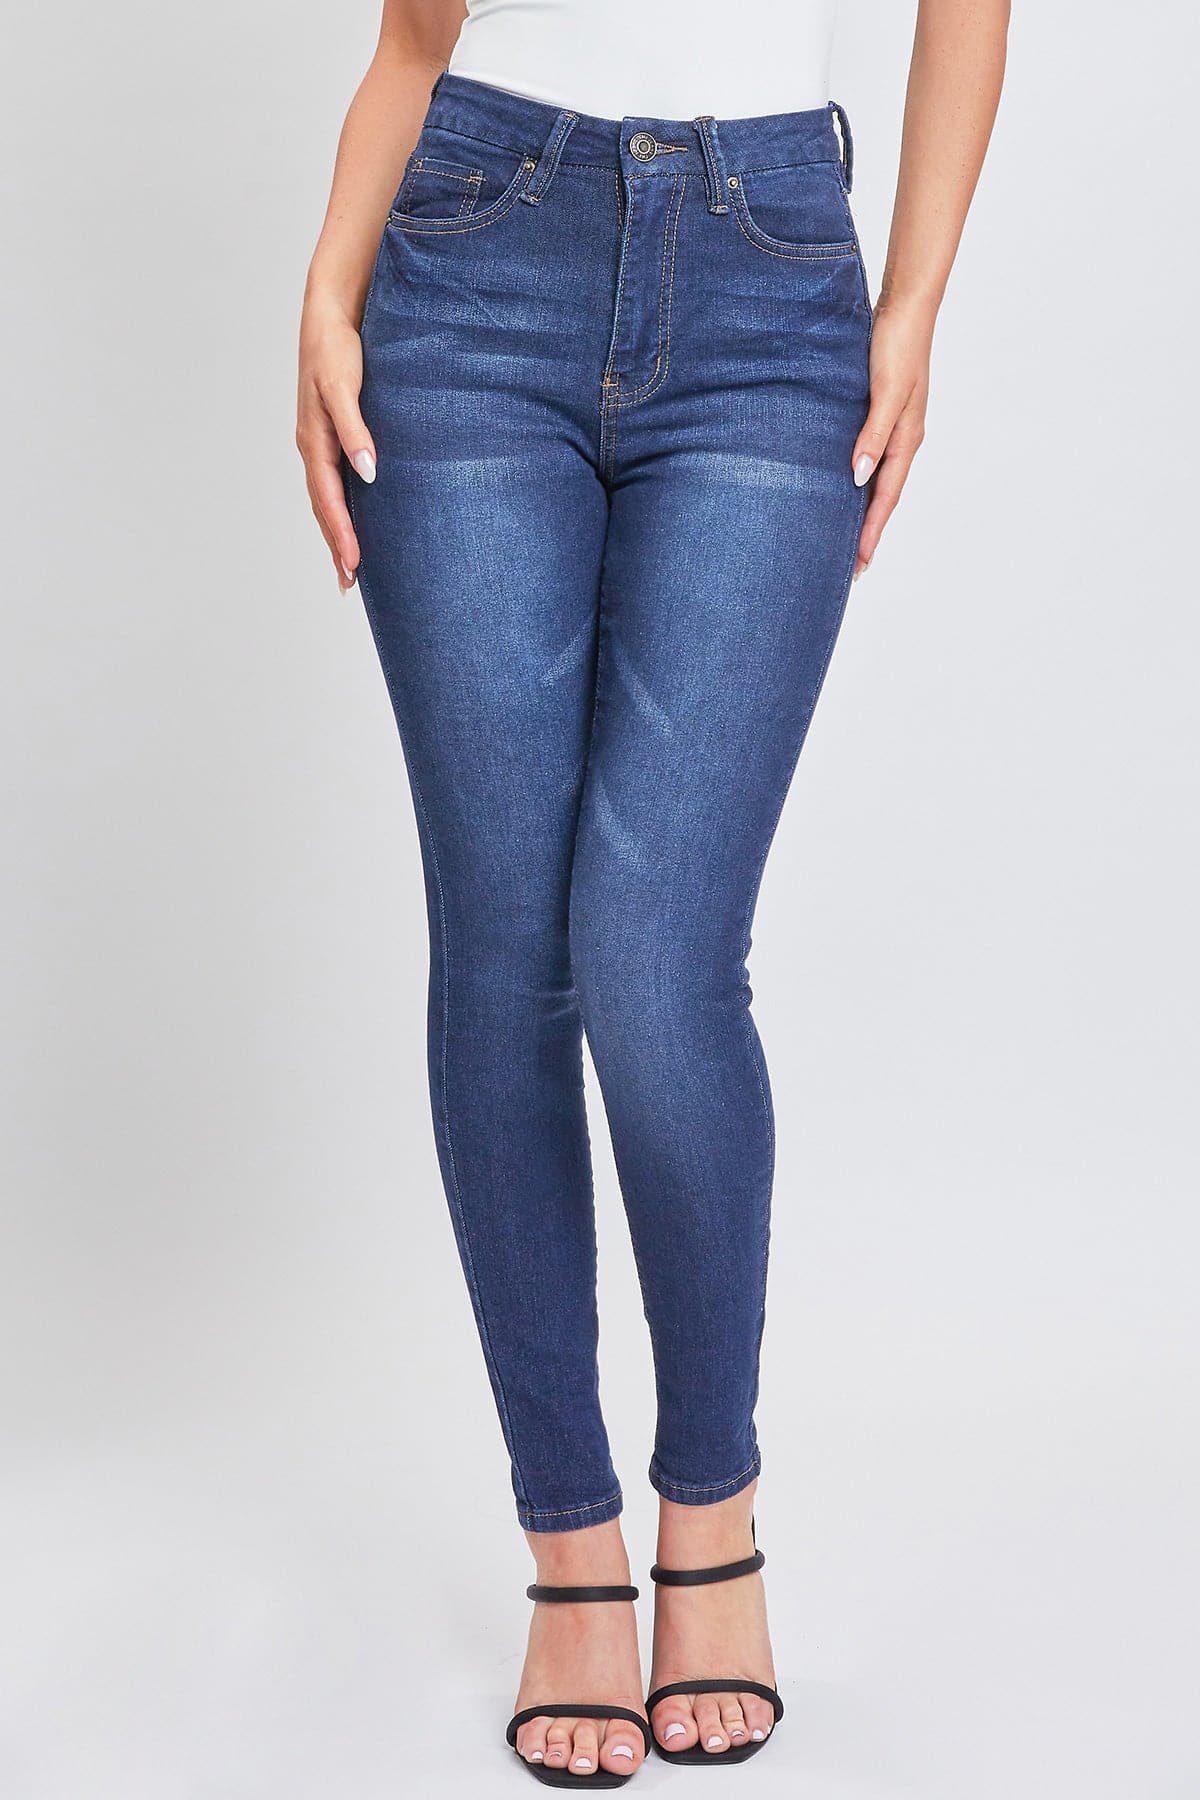 Elena's YMI Curvy Dark Wash Fit High-Rise Skinny Stretchy Women's Jean –  Bossy Fashion Boutique